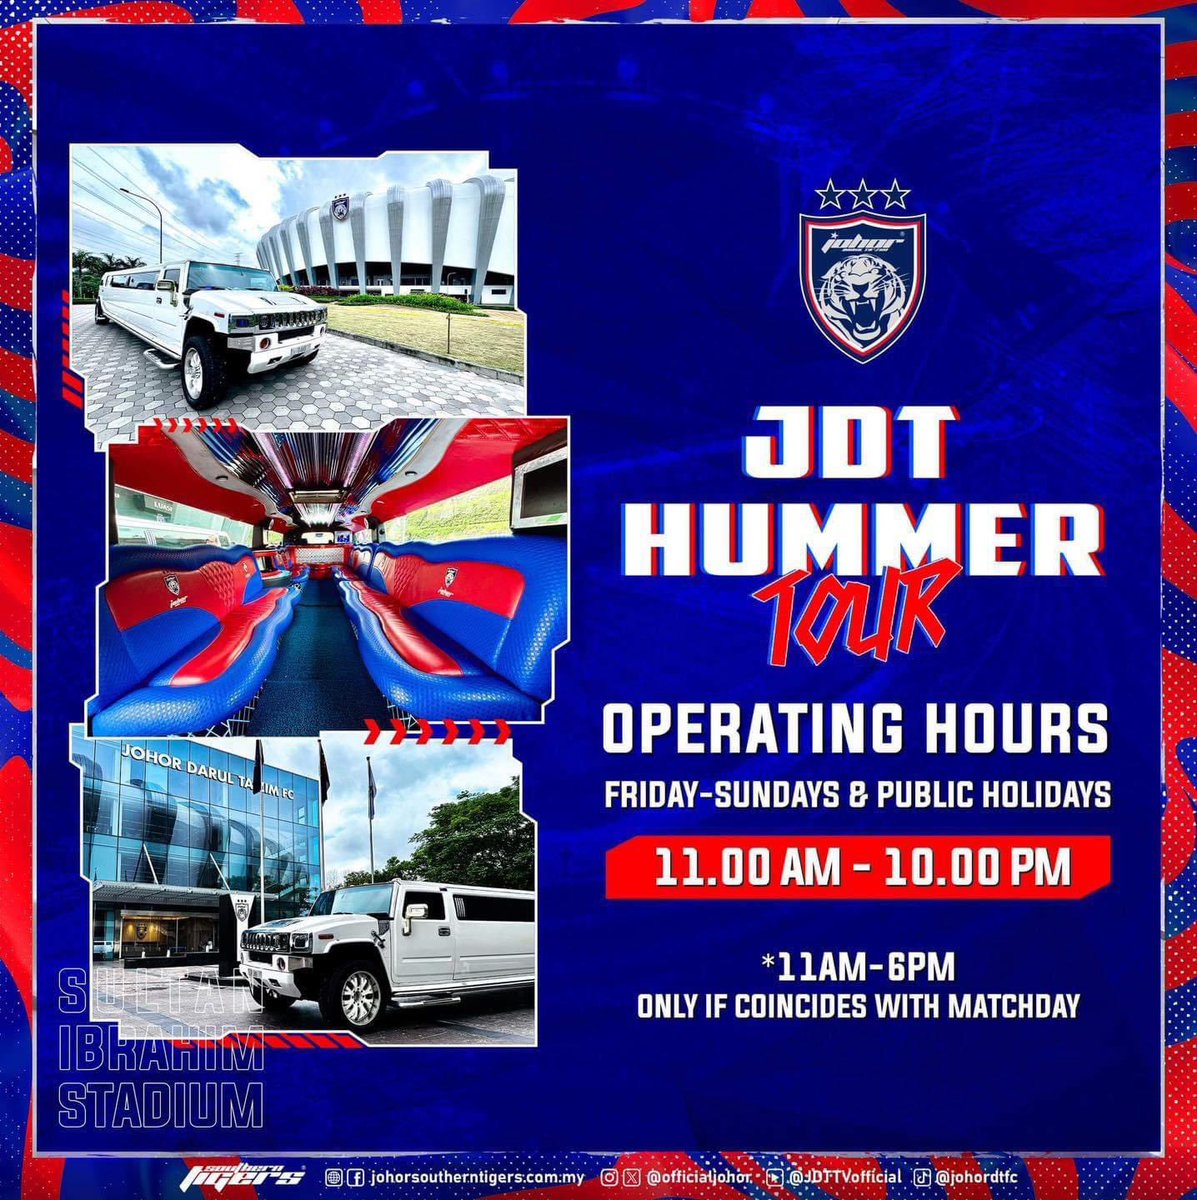 JDT HUMMER TOUR OPERATING HOURS Hidup Johor Demi Johor #WhatCanYouDo #TheTMJeffect #HarimauSelatan #SouthernTigers #PermataSelatan #JewelOfTheSouth #JDTuntukSemua #JDTforAll